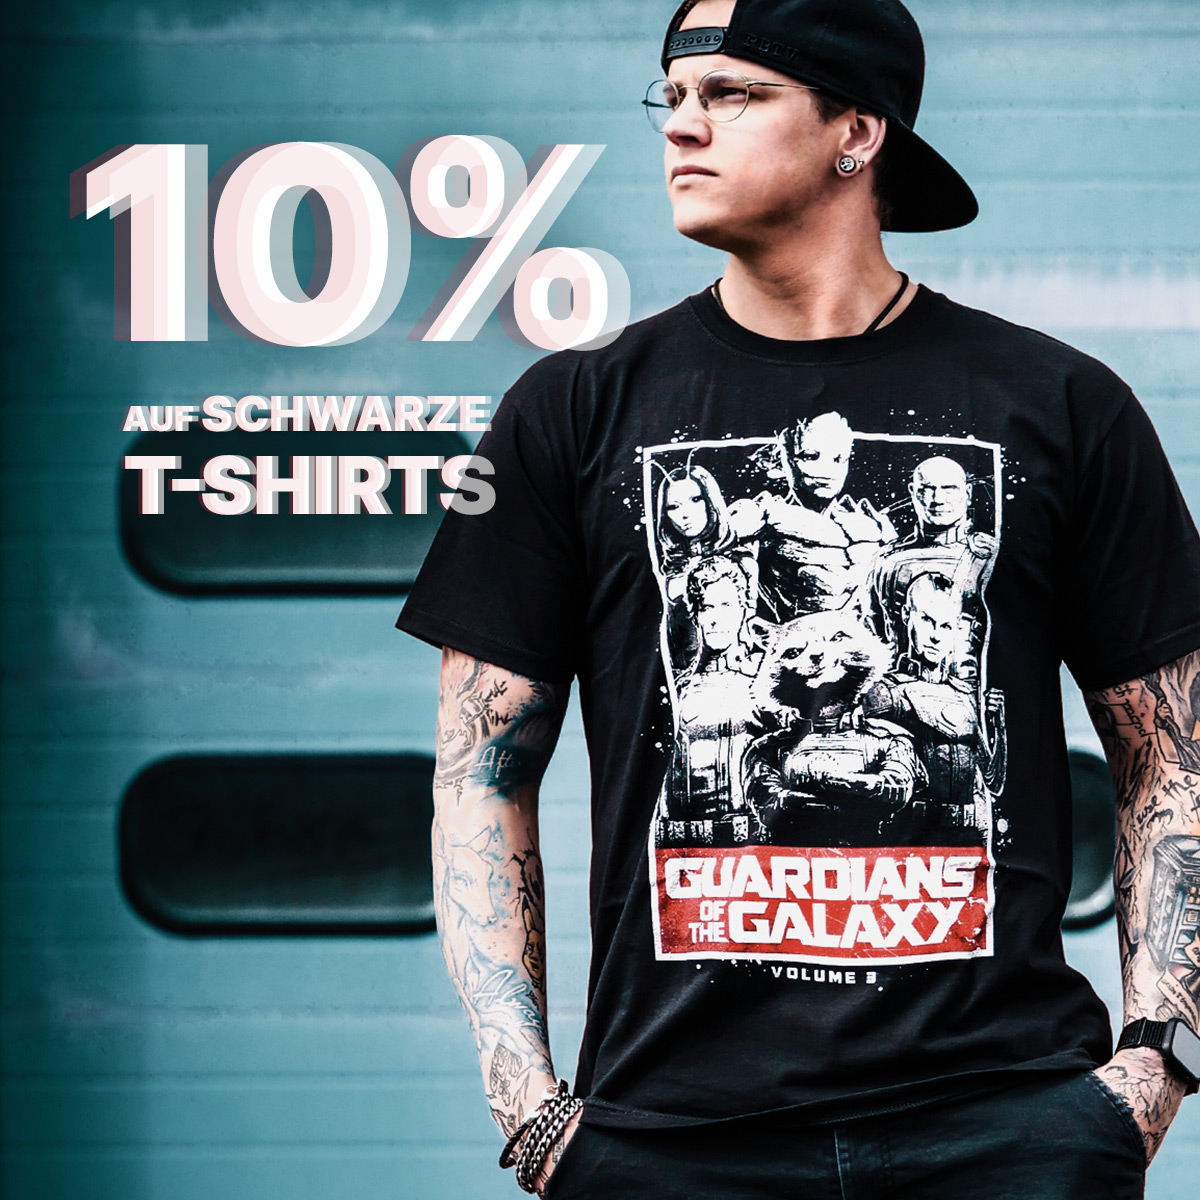 10% auf schwarze T-Shirts